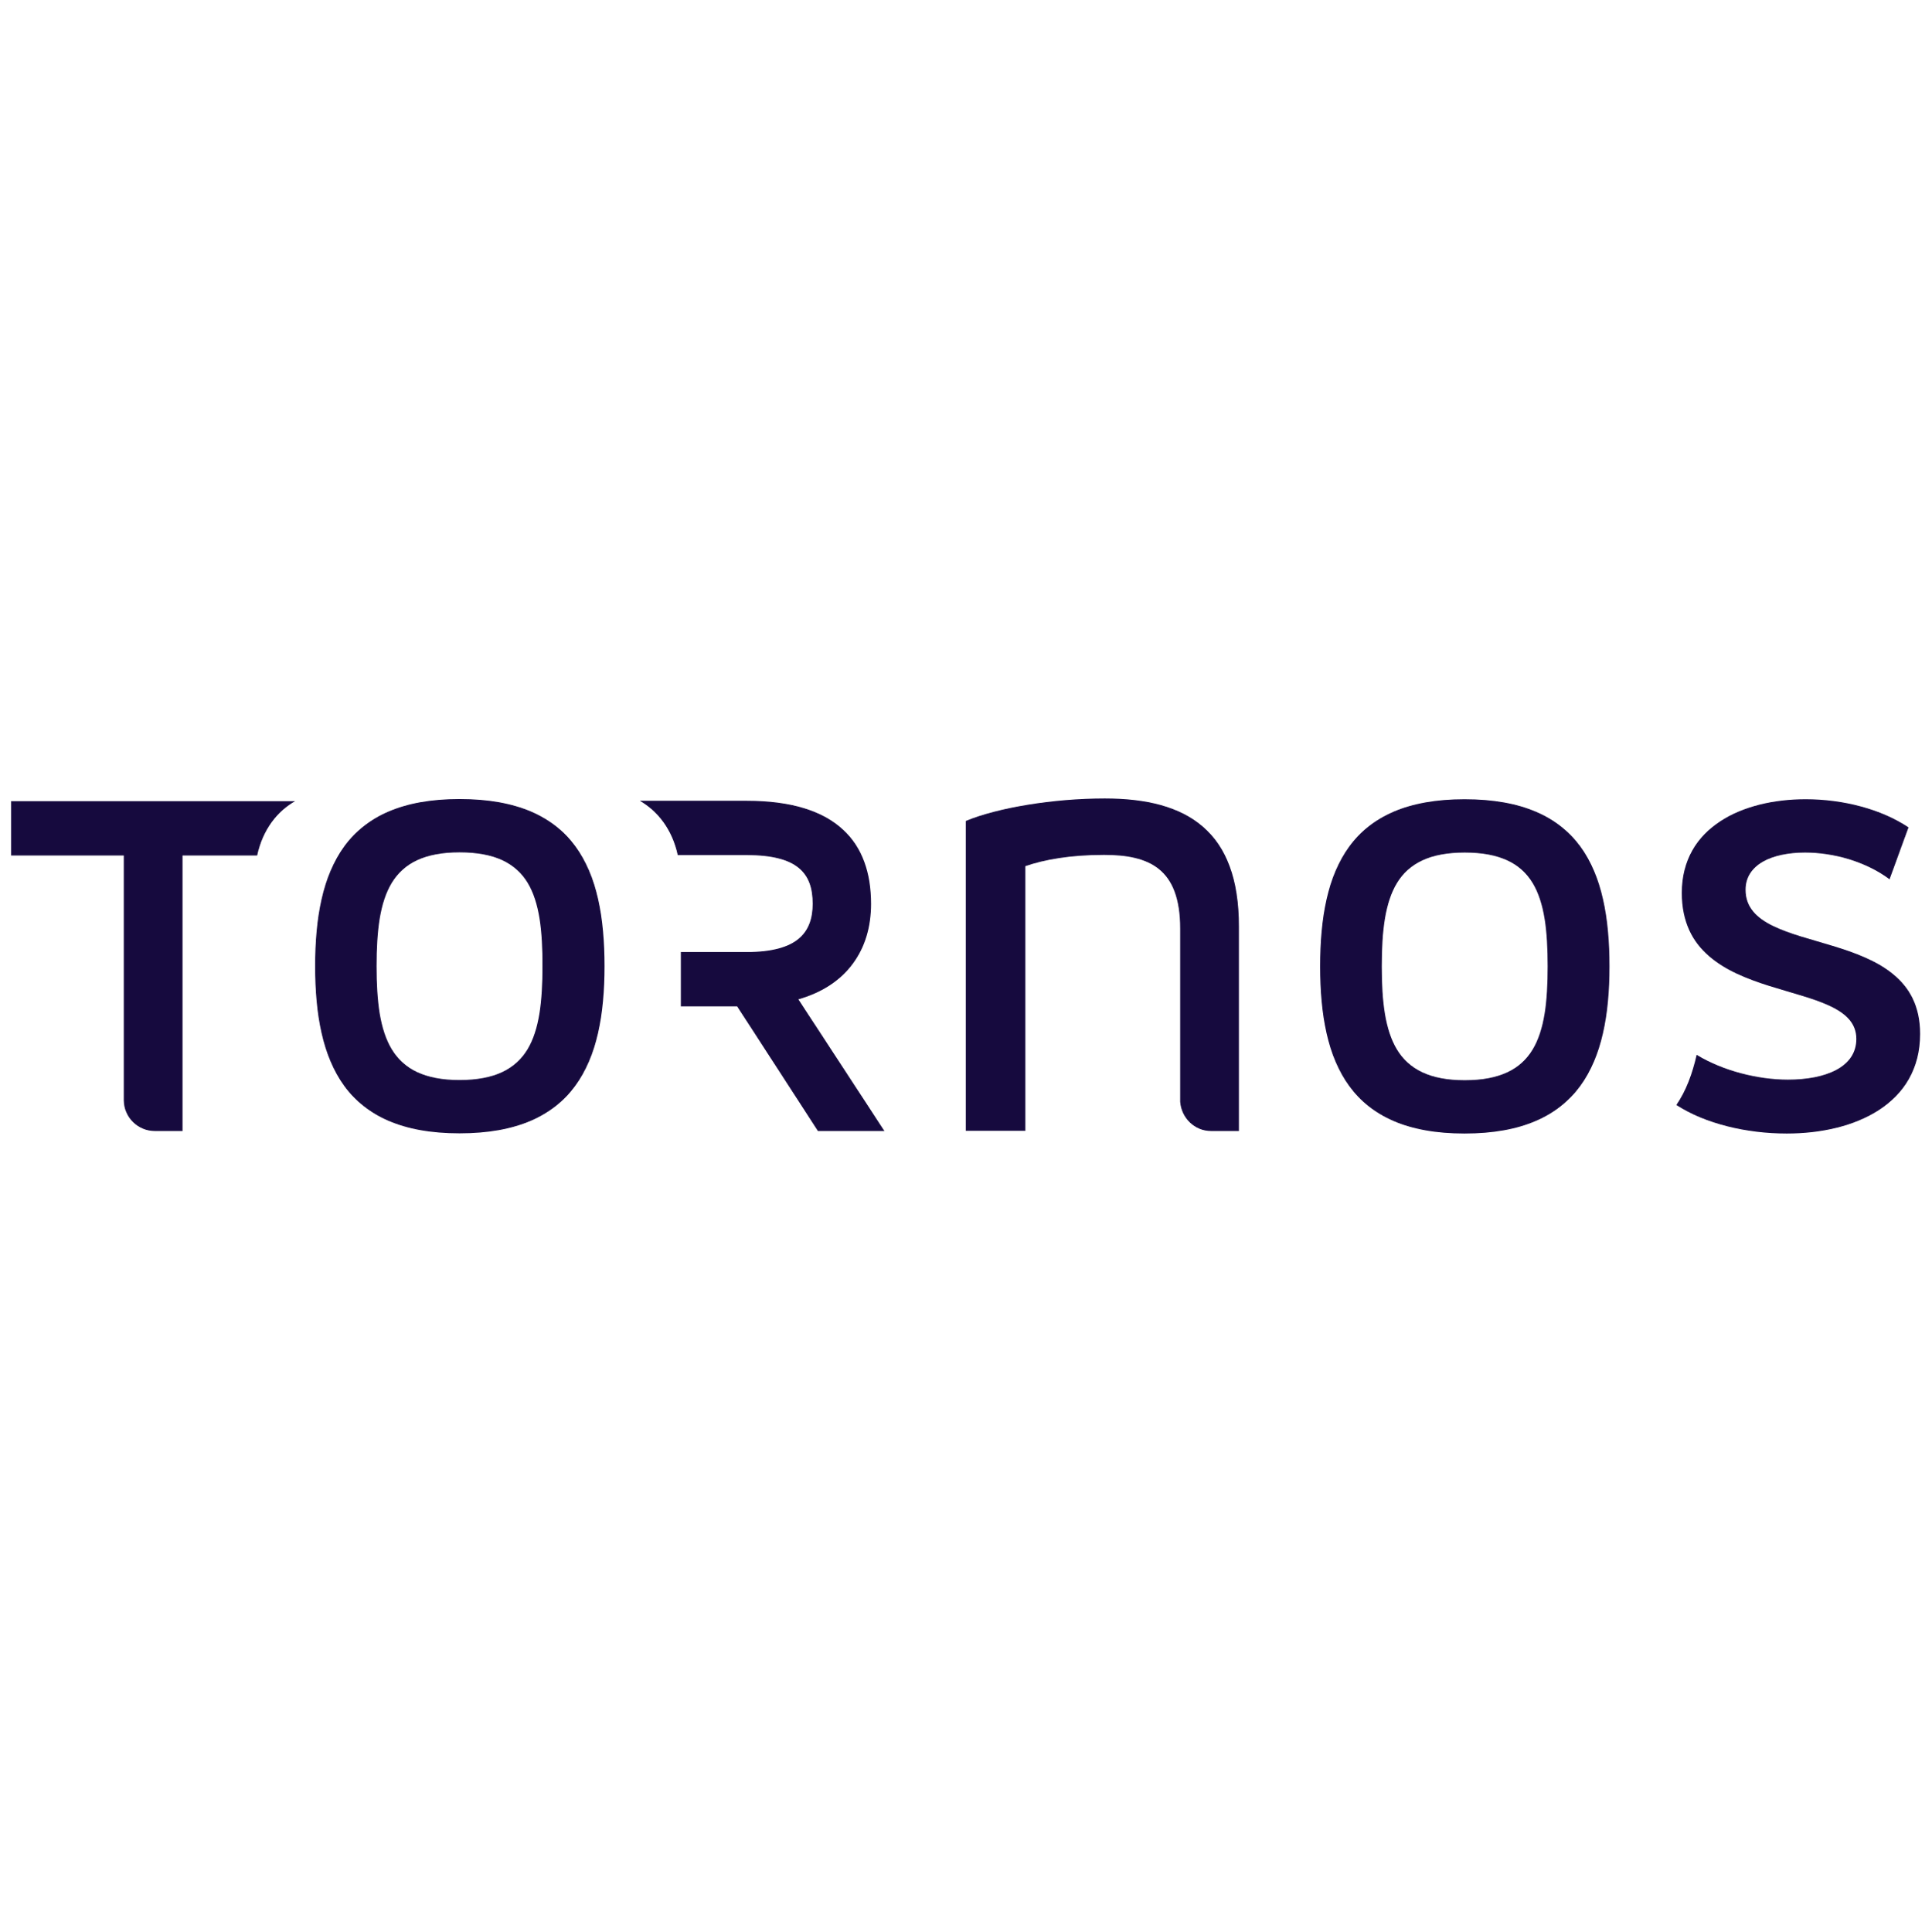 Tornos Bildmarke Logo  Transparent Clipart